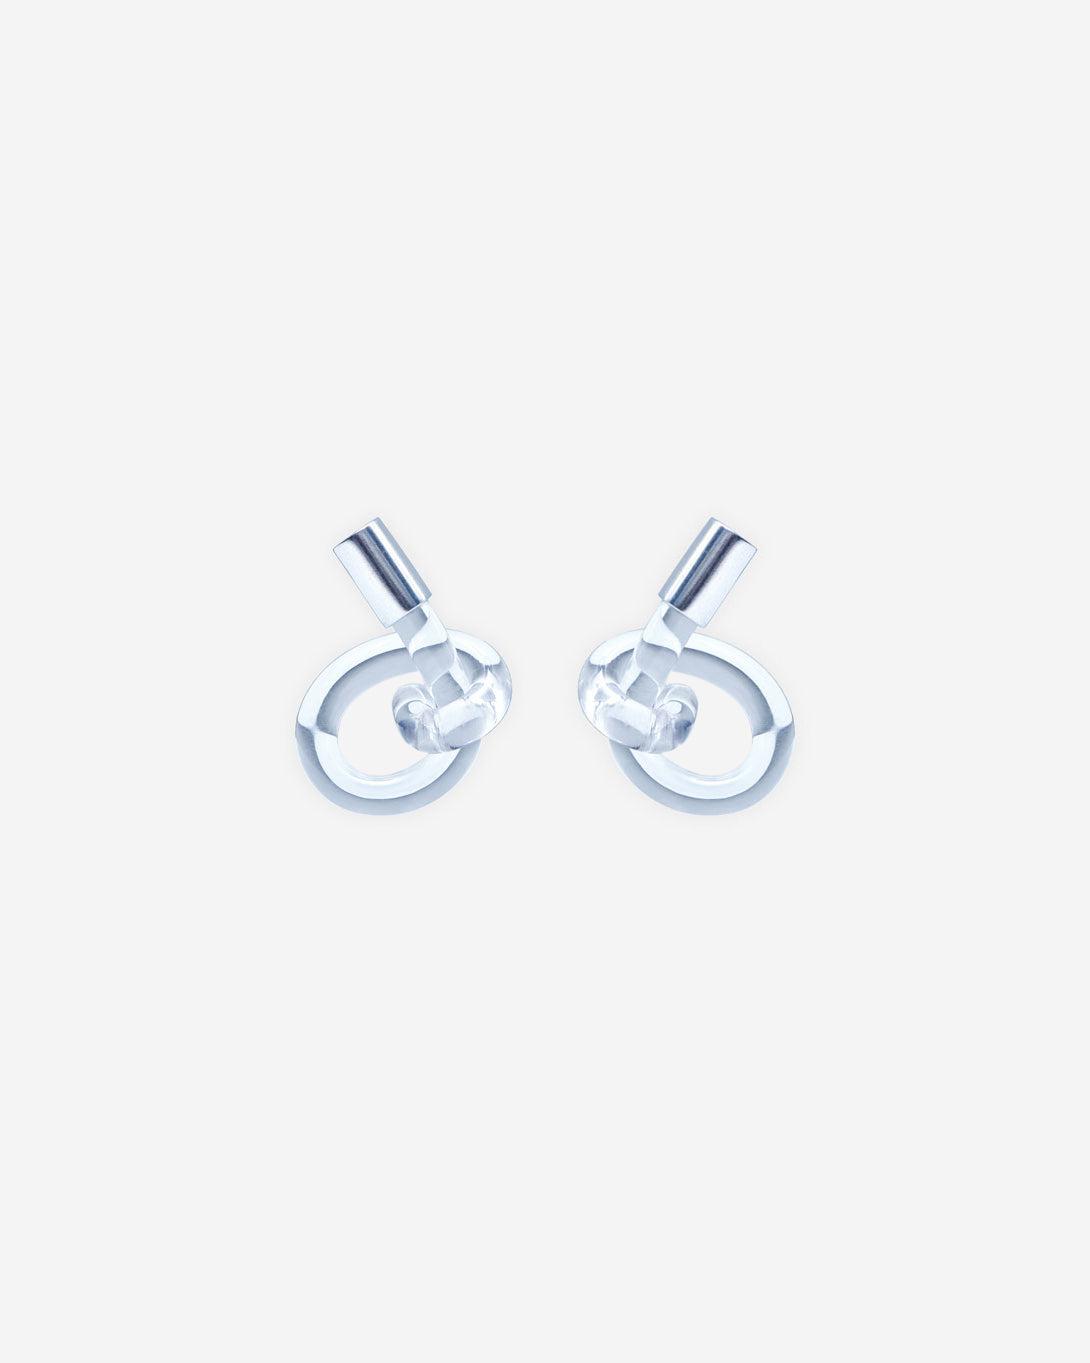 Small Knot Earrings - Jewelry - Milko Boyarov - Elevastor